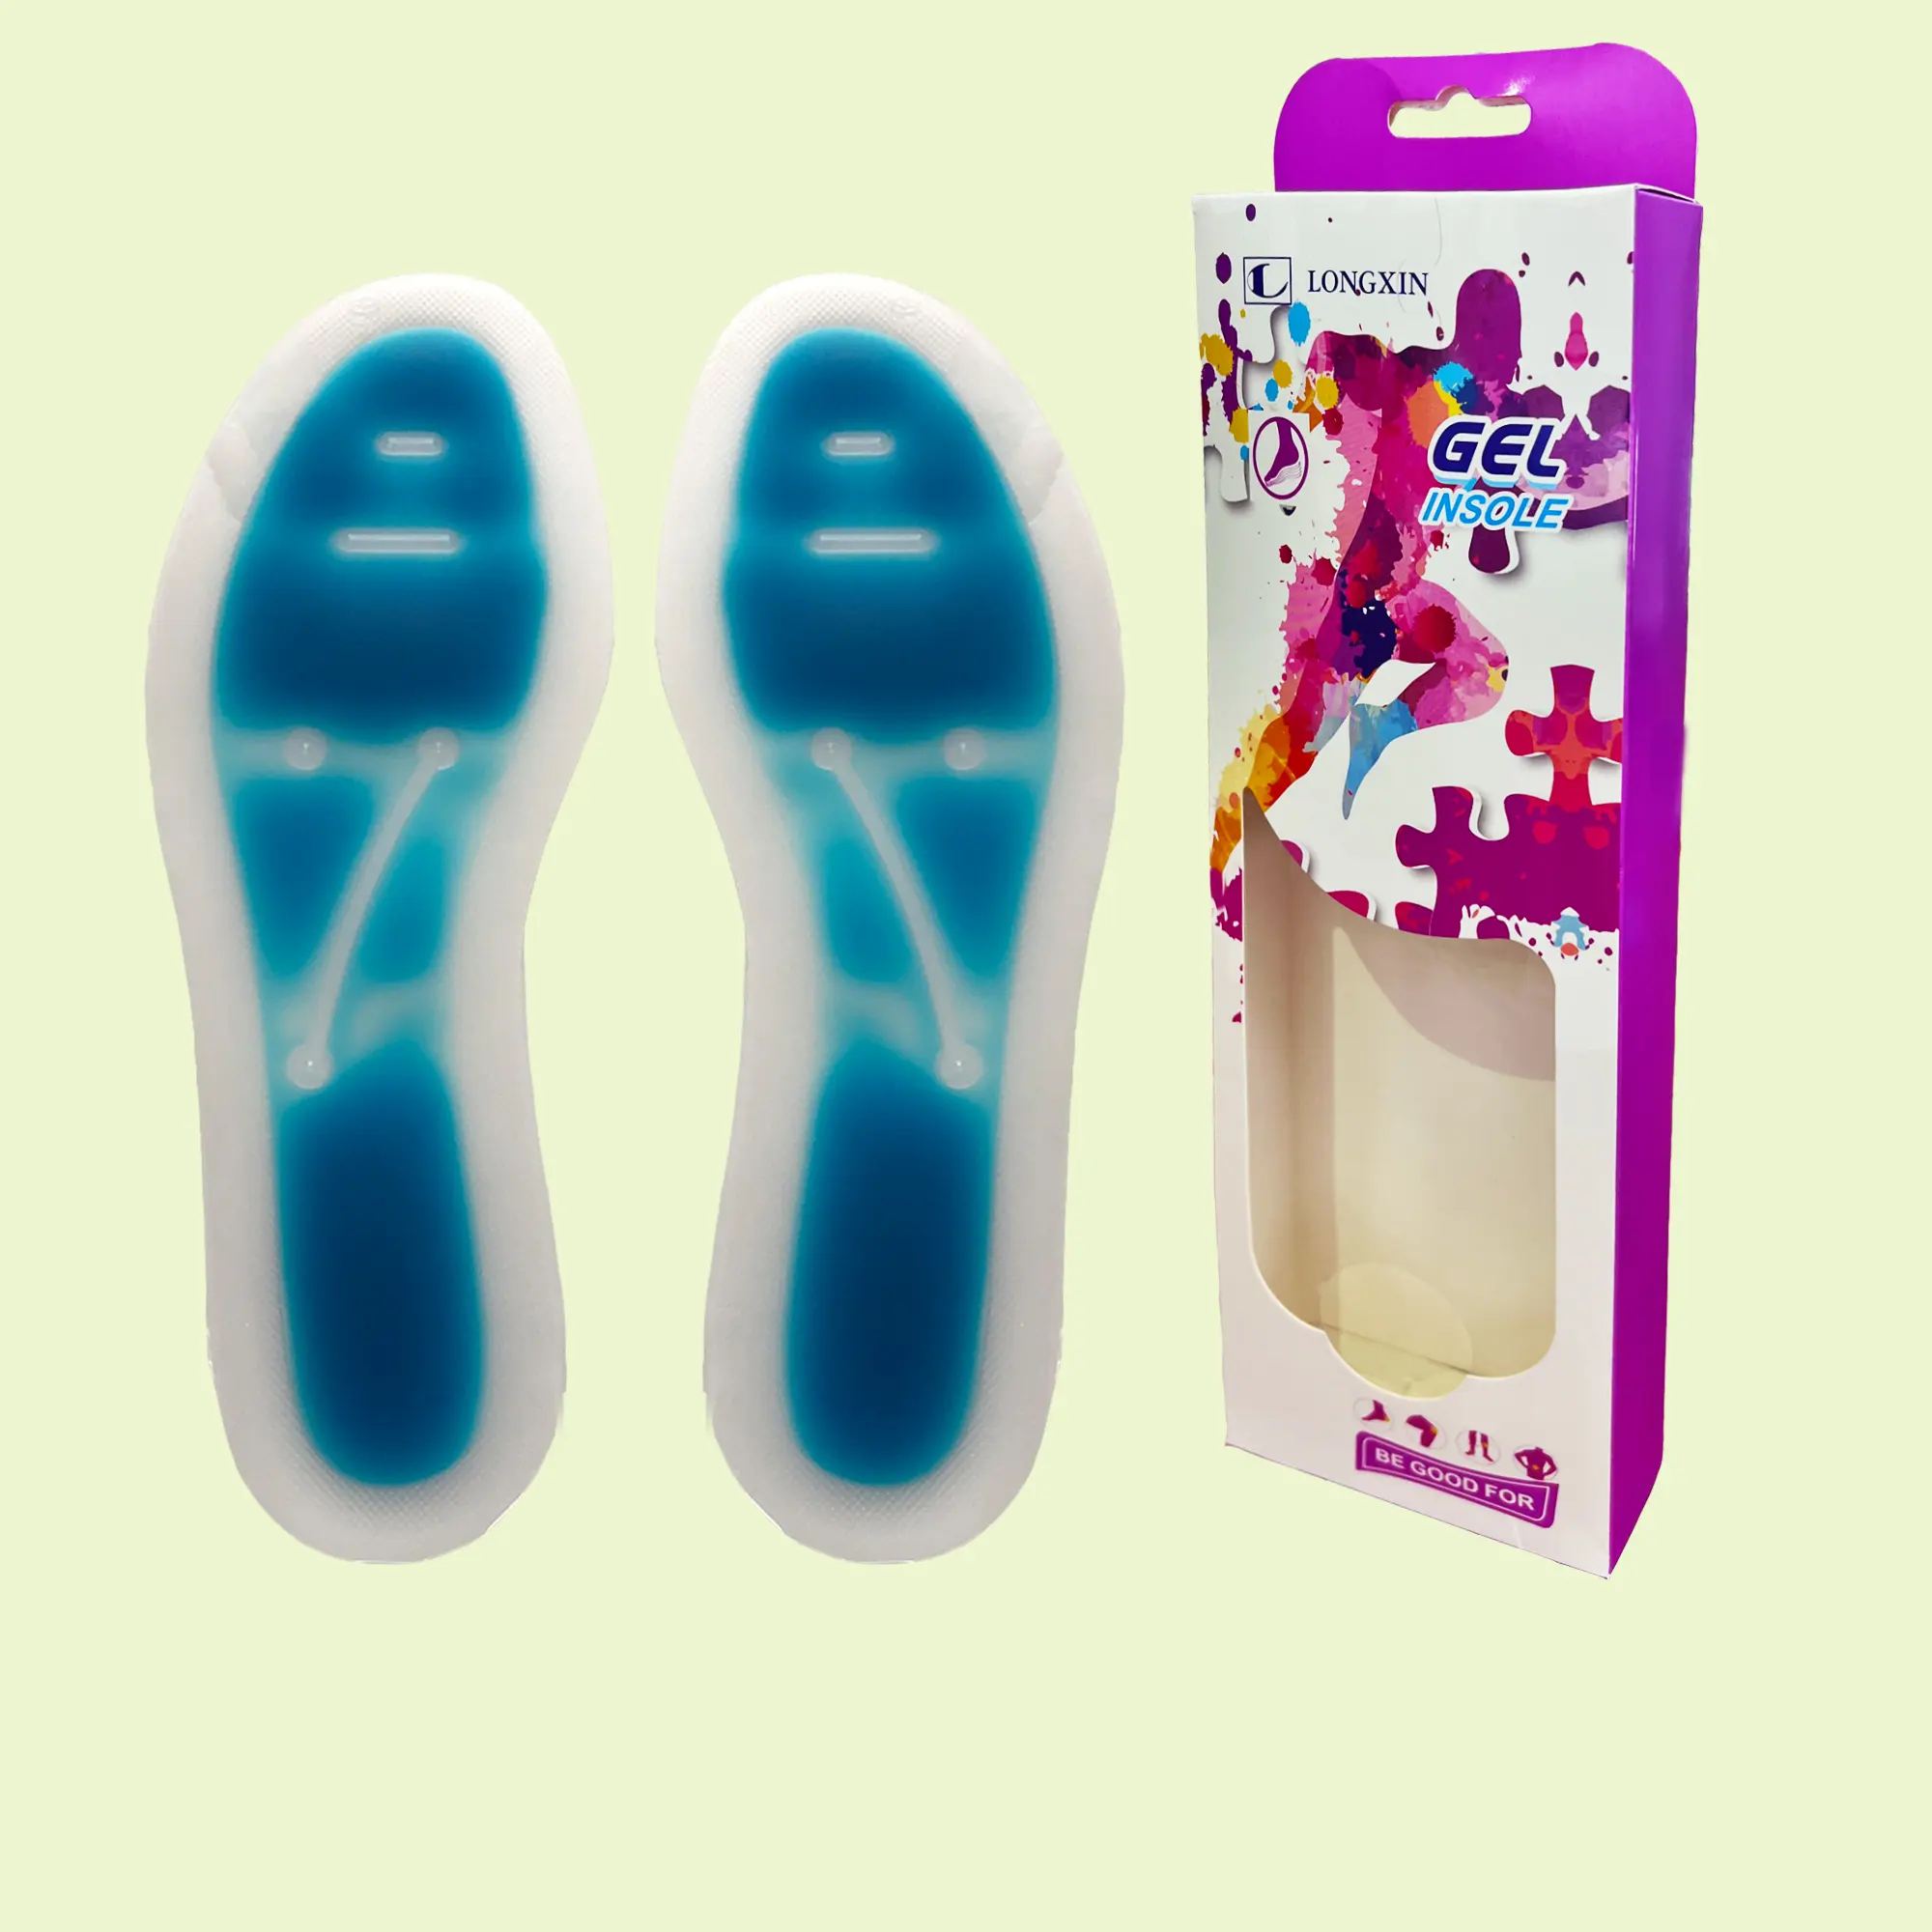 Plantillas de silicona líquida para aliviar el dolor de los pies, almohadilla de soporte para ARCO, calcetines